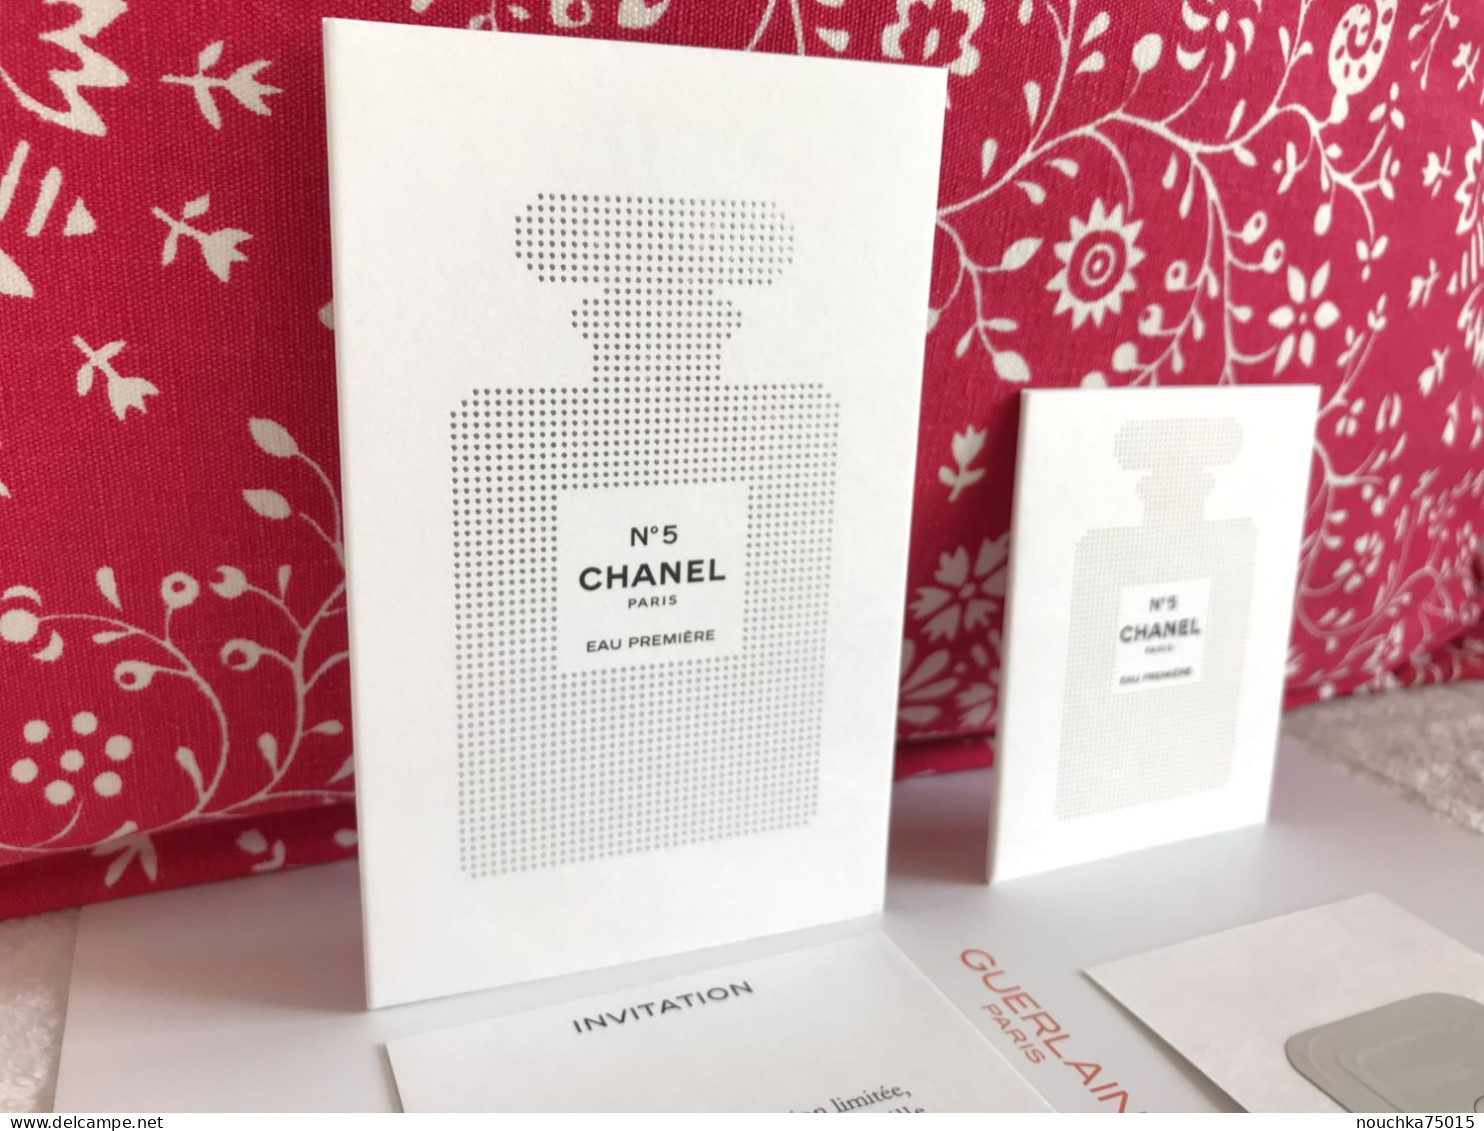 Chanel - N°5 Eau première, lot de deux cartes